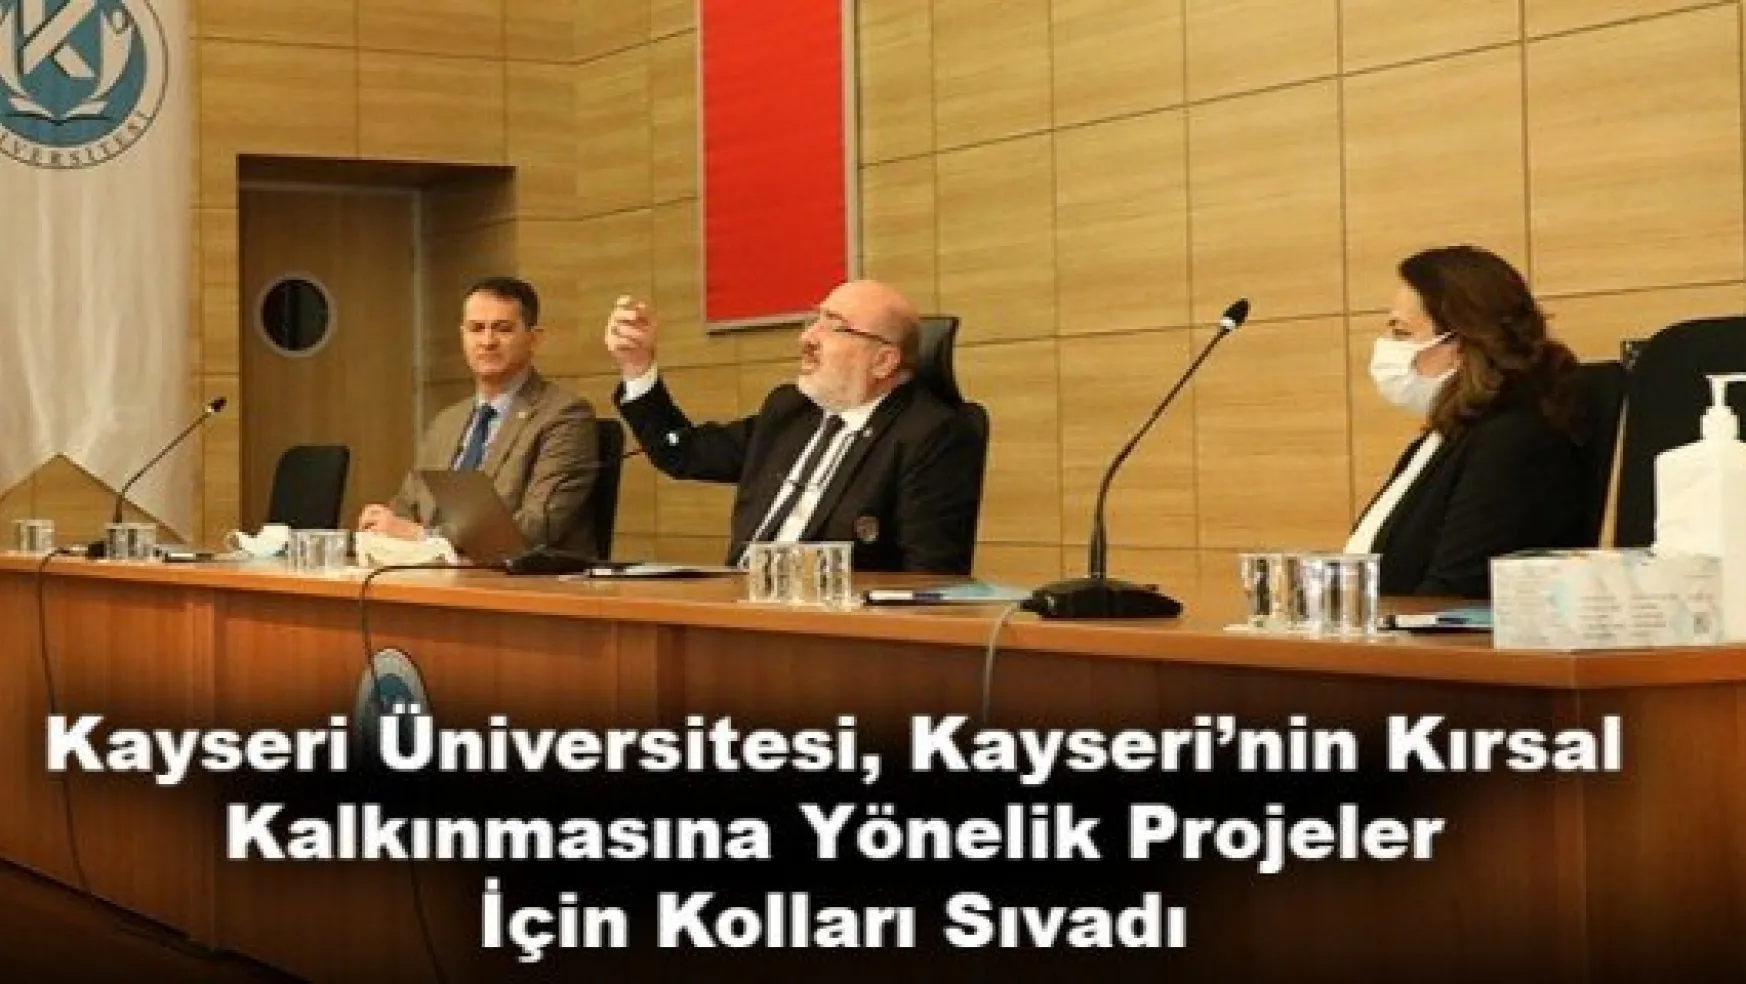 Kayseri Üniversitesi, Kayseri'nin Kırsal Kalkınmasına Yönelik Projeler İçin Kolları Sıvadı